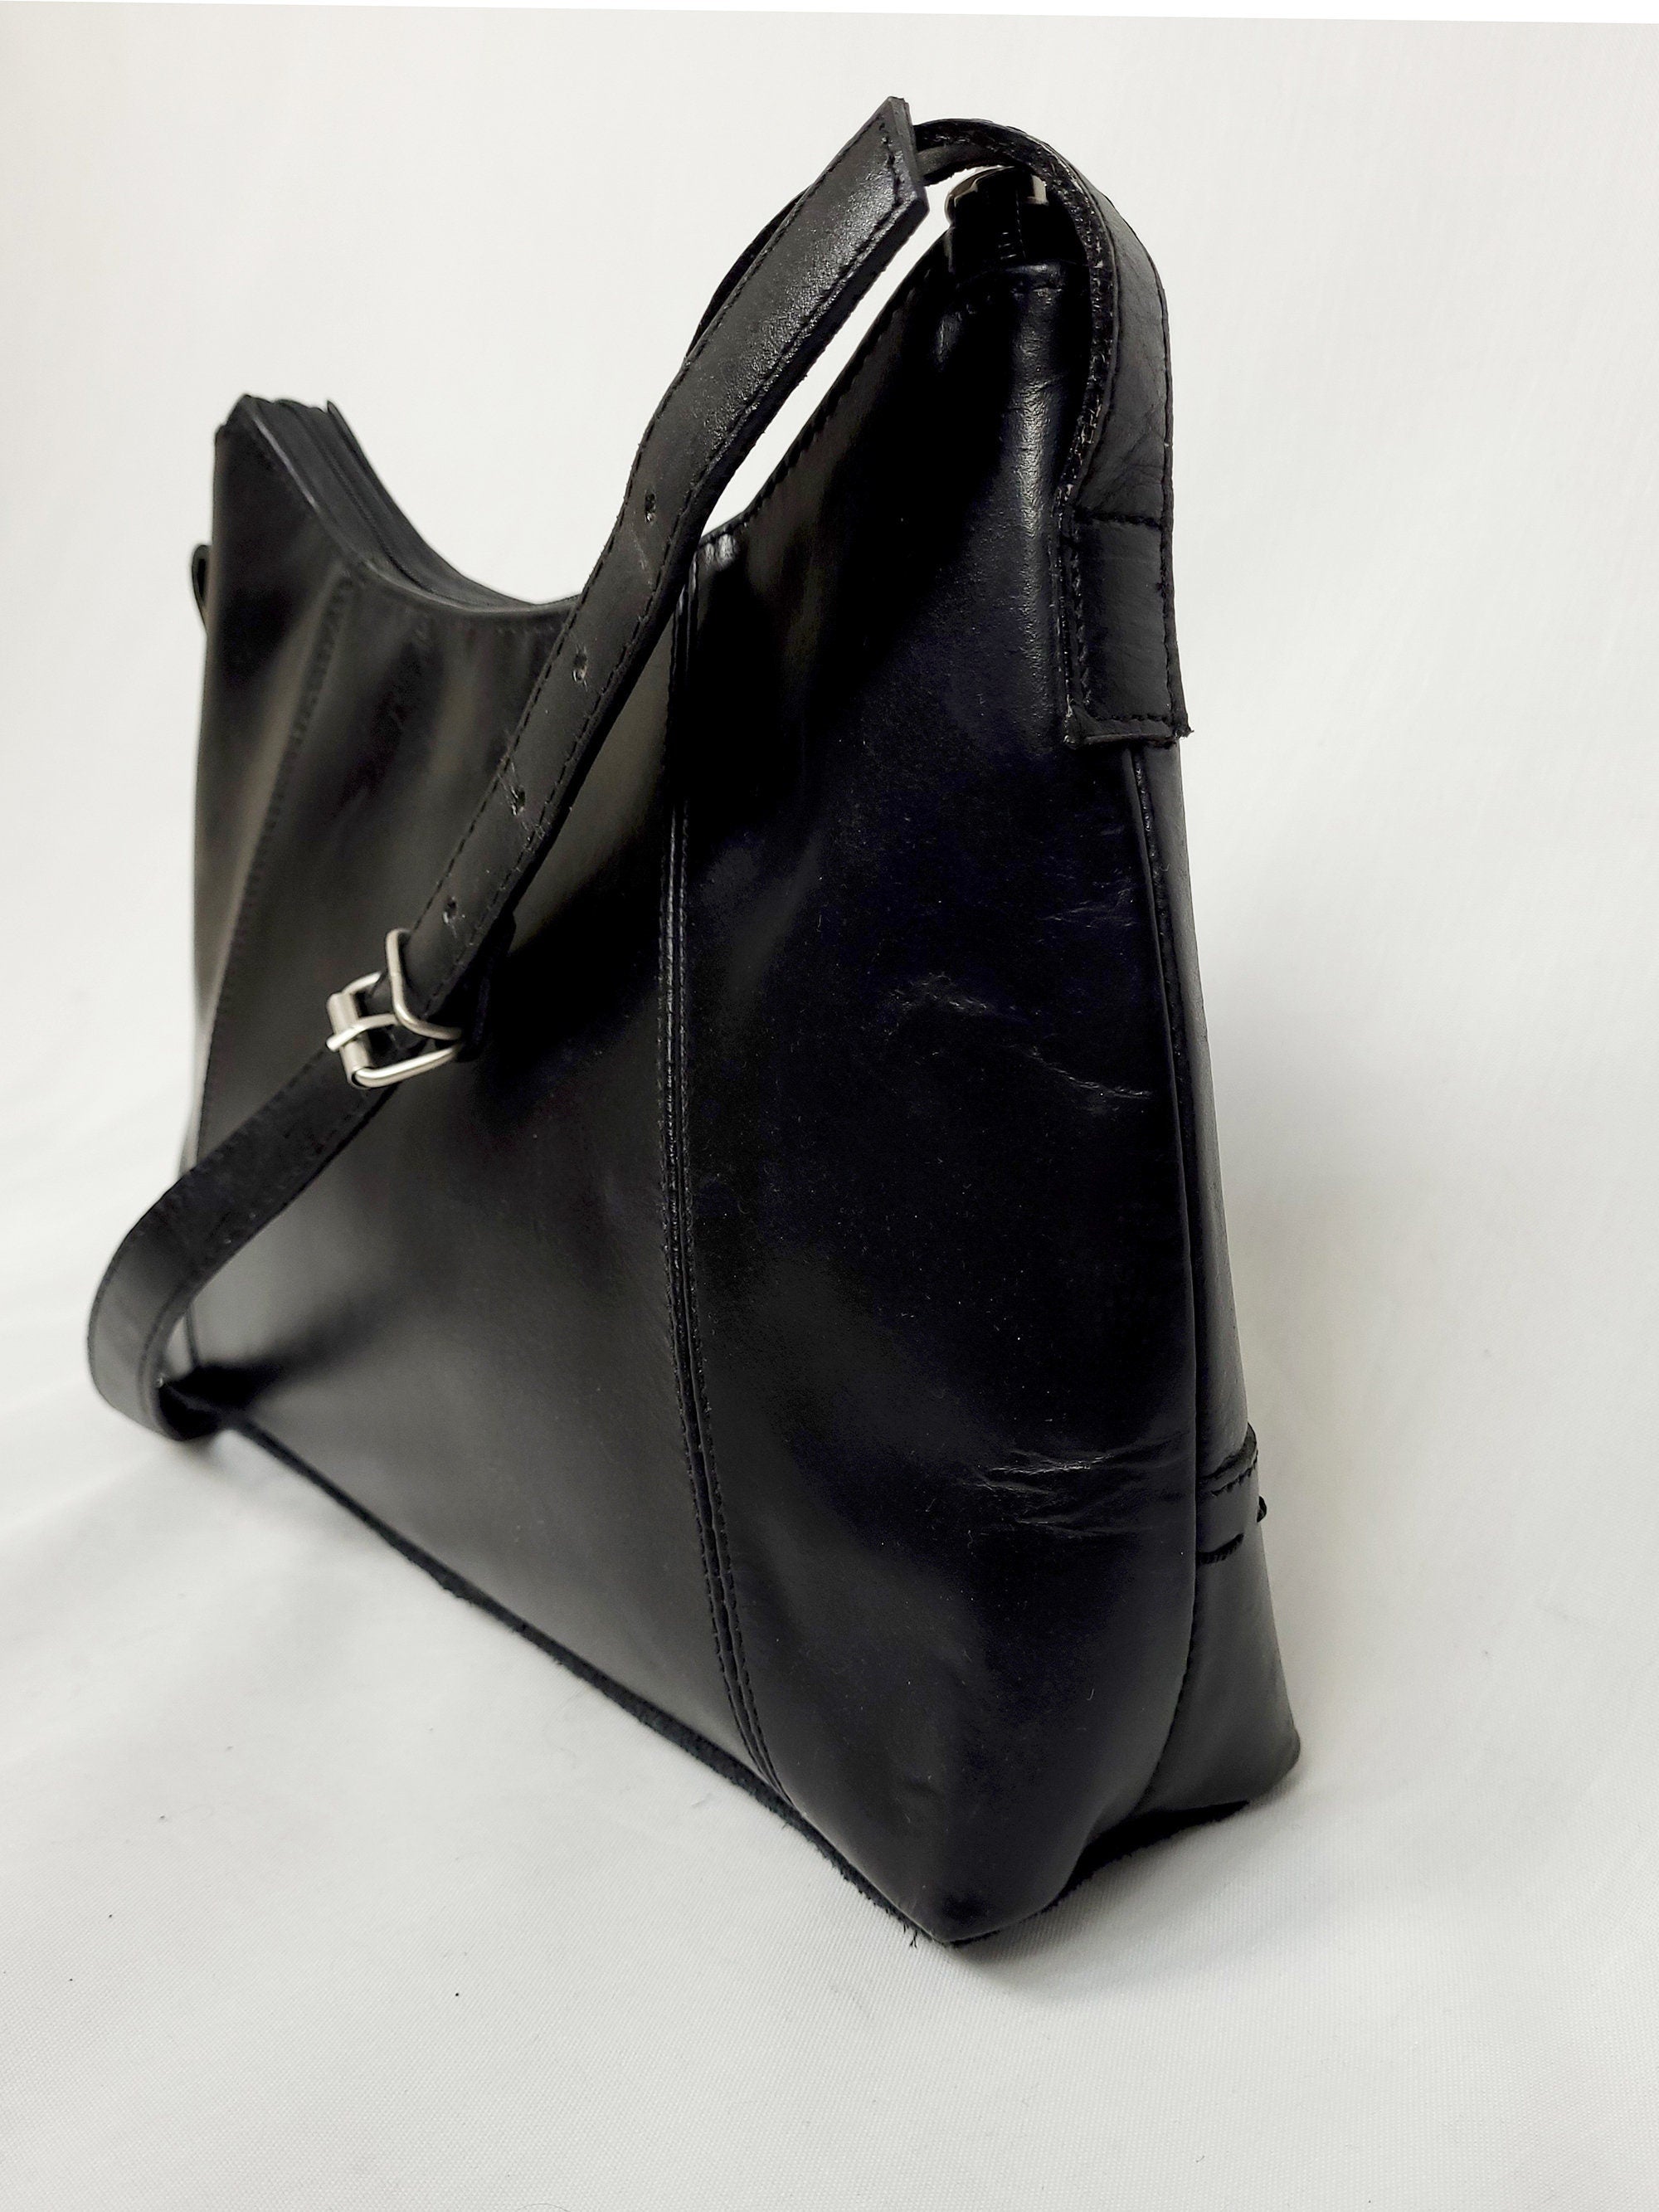 Vintage 90s minimalist black leather shoulder bag